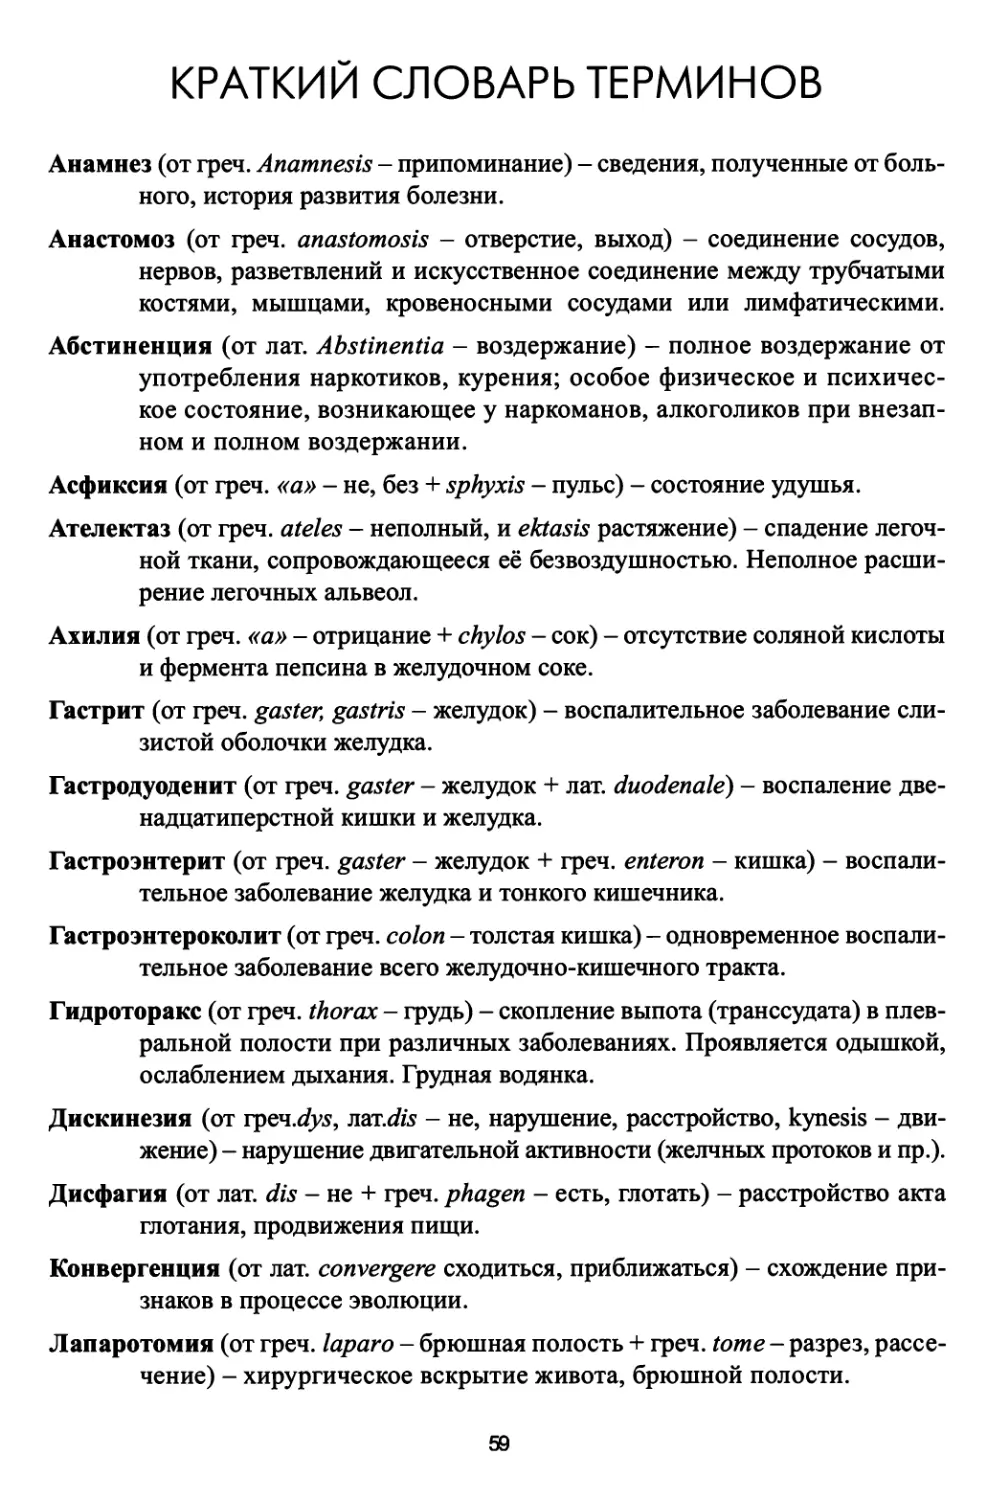 Краткий словарь терминов